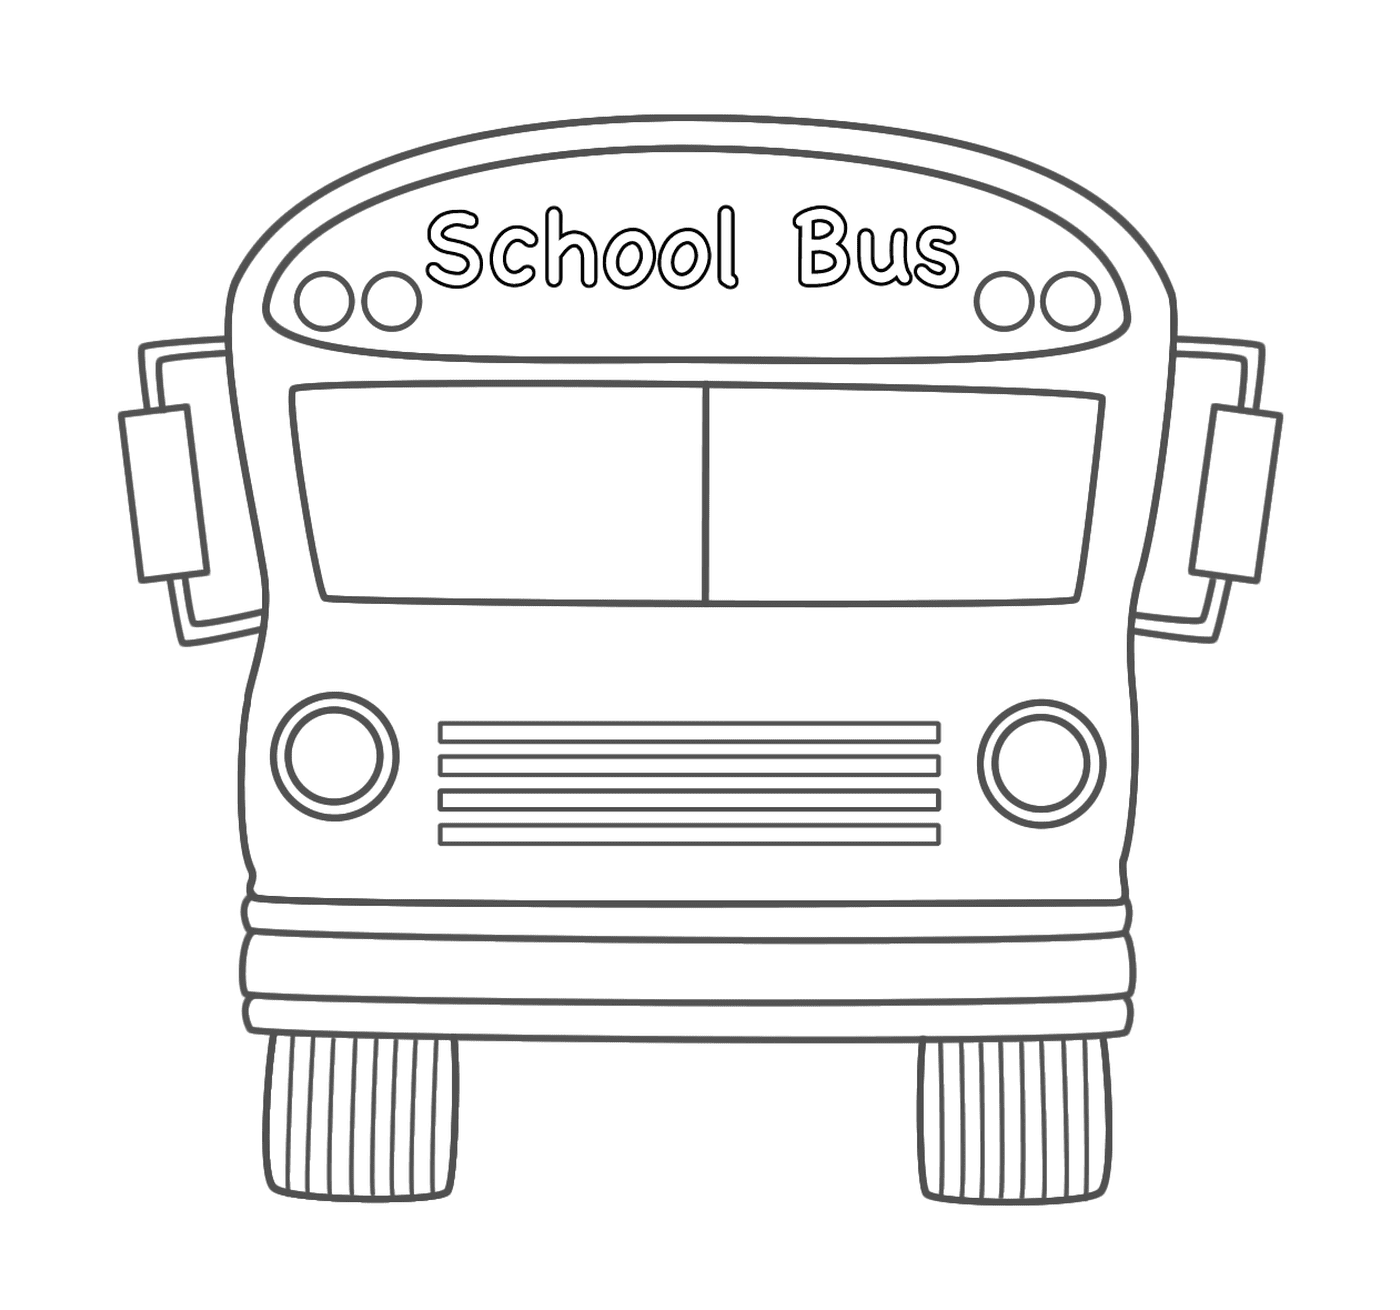  Um ônibus escolar 